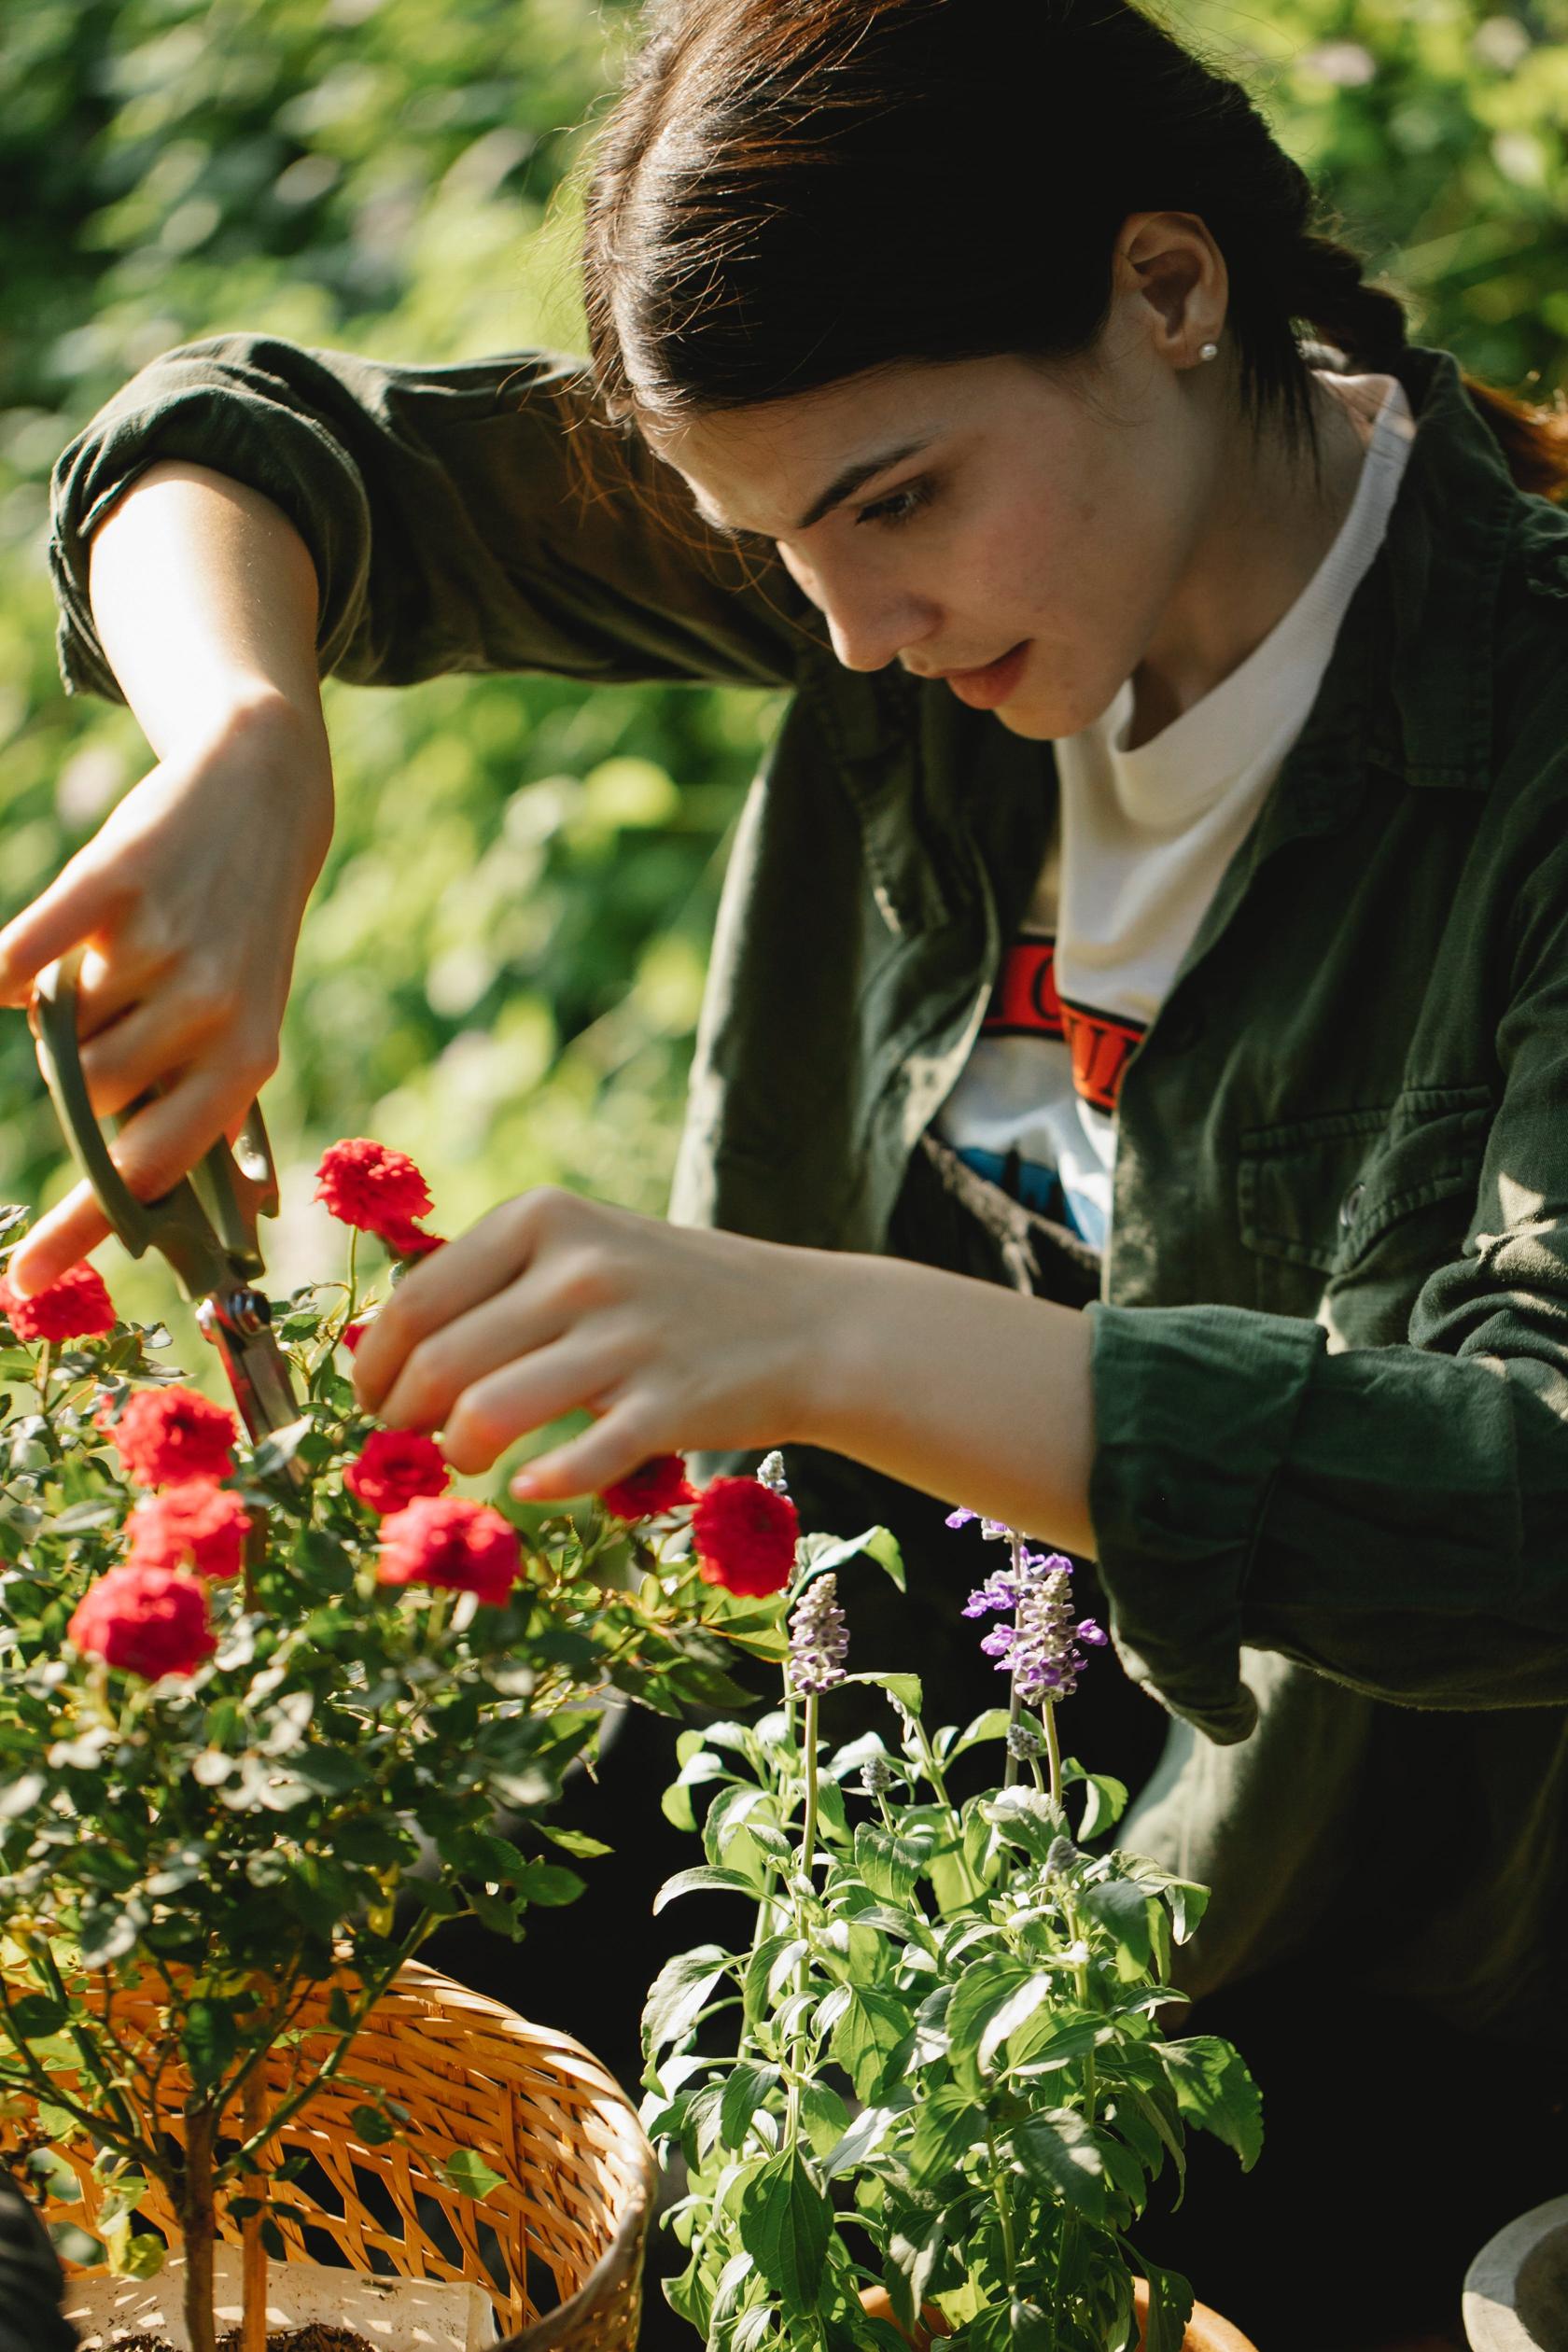 Pielęgnacja kwiatów ciętych: podlewanie, przycinanie i ochrona przed szkodnikami